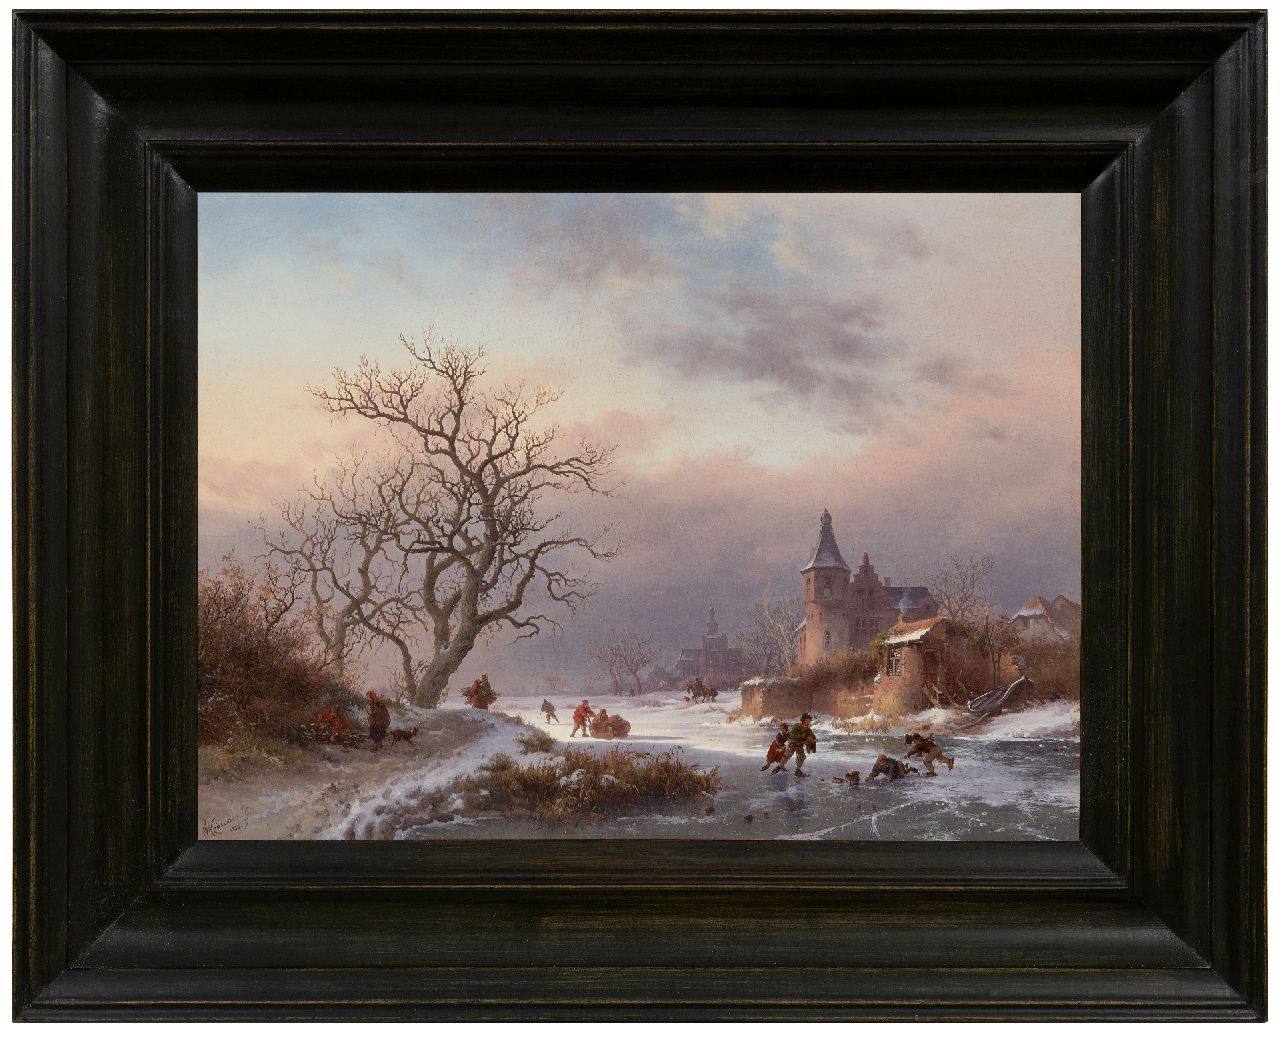 Kruseman F.M.  | Frederik Marinus Kruseman | Schilderijen te koop aangeboden | Winterlandschap met schaatsers op een bevroren rivier, olieverf op paneel 29,0 x 39,0 cm, gesigneerd linksonder en gedateerd 1855